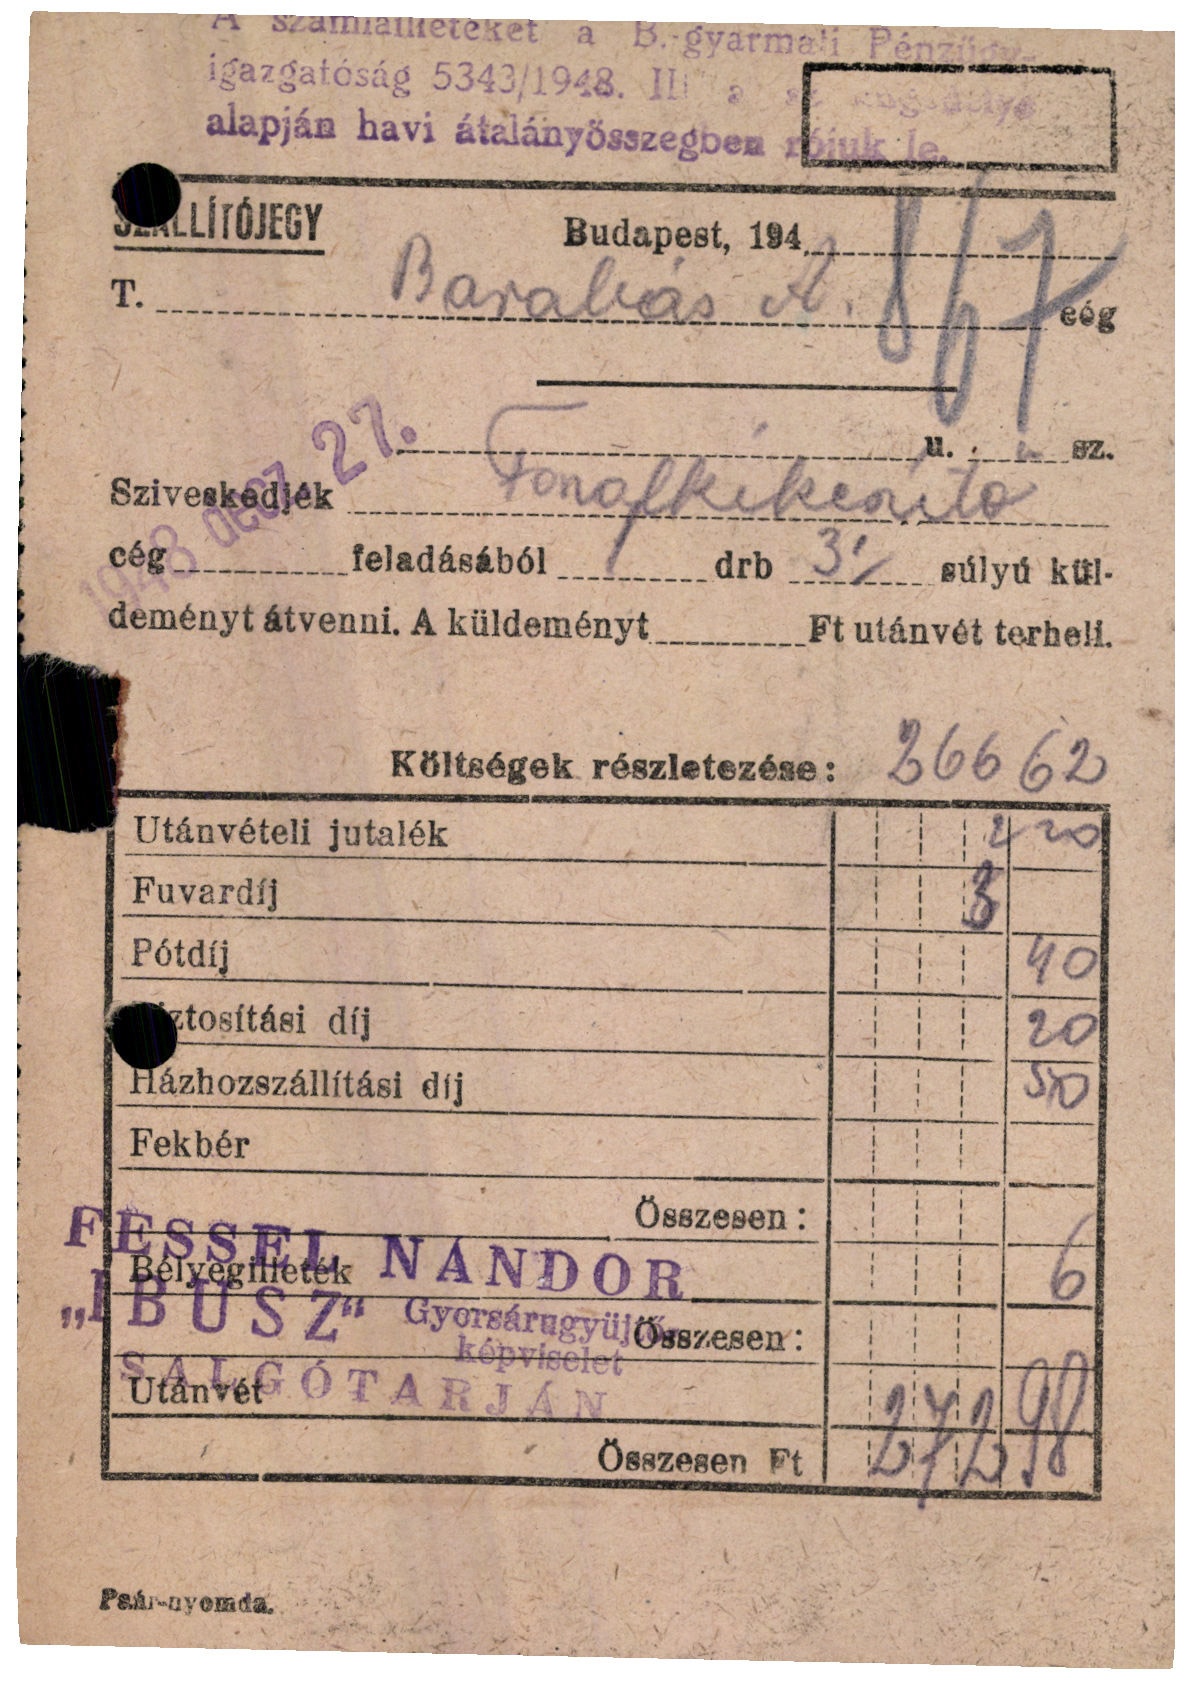 Fessel Nándor "IBUSZ" gyorsárugyűjtő képviselet (Magyar Kereskedelmi és Vendéglátóipari Múzeum CC BY-NC-SA)